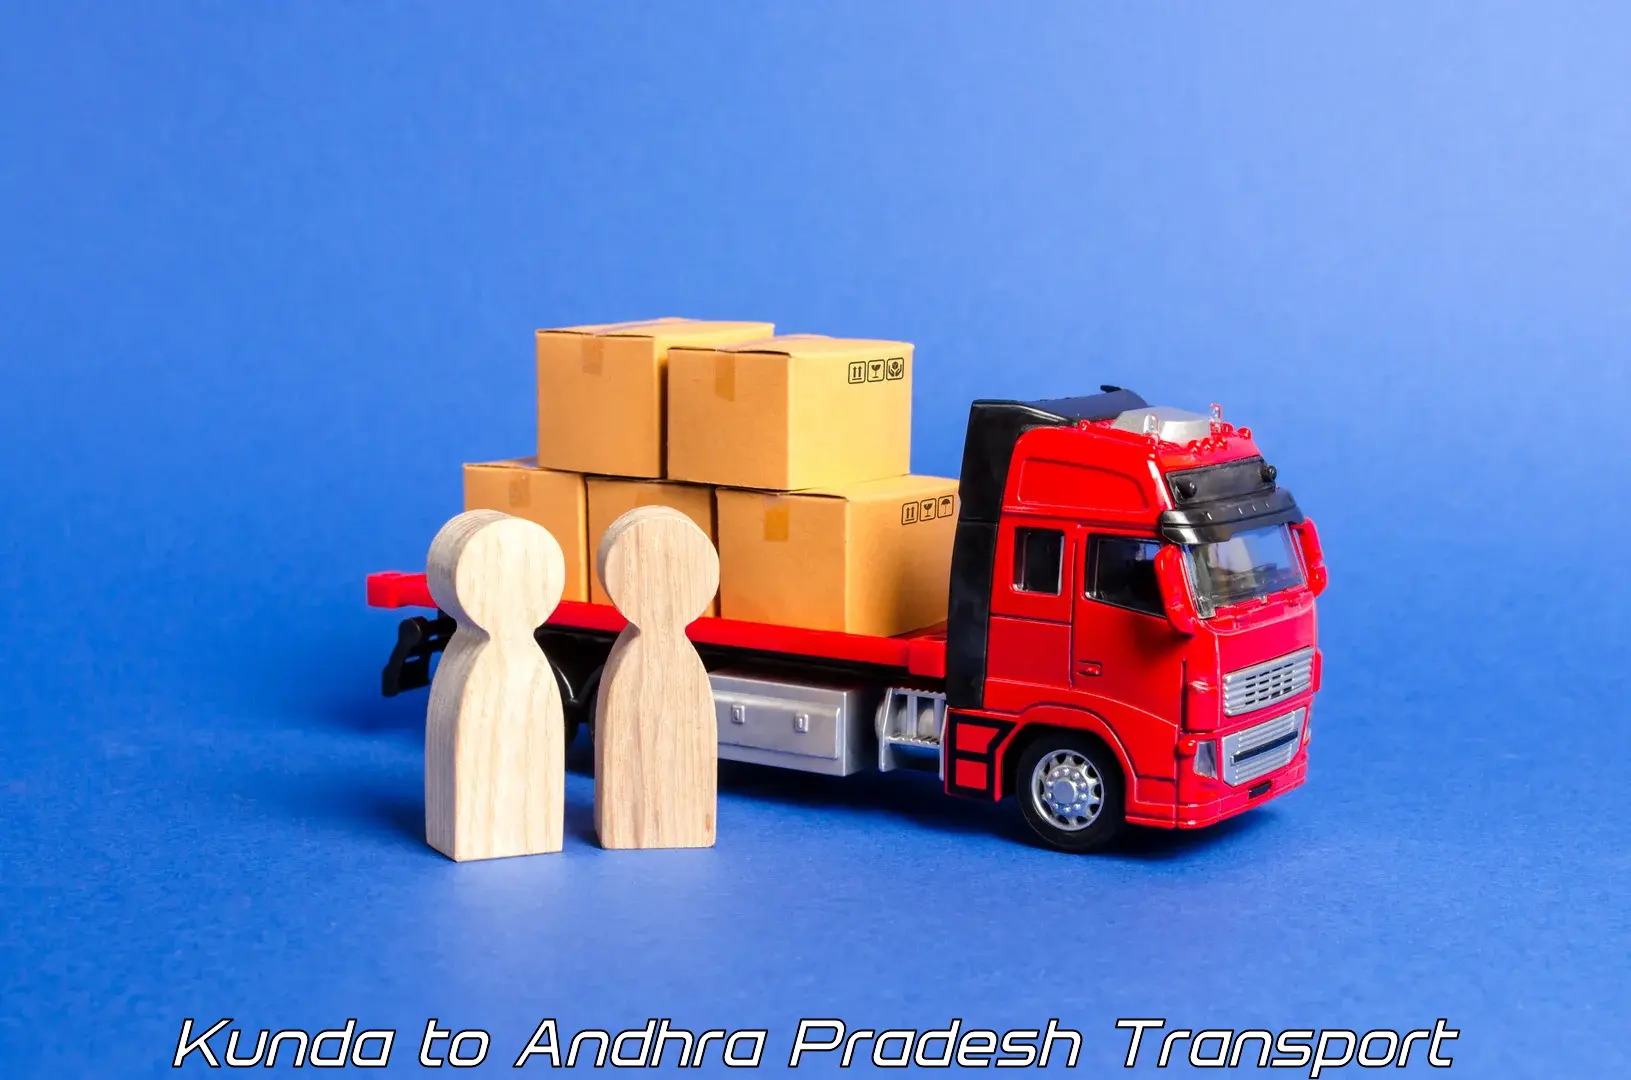 Transport in sharing in Kunda to Martur